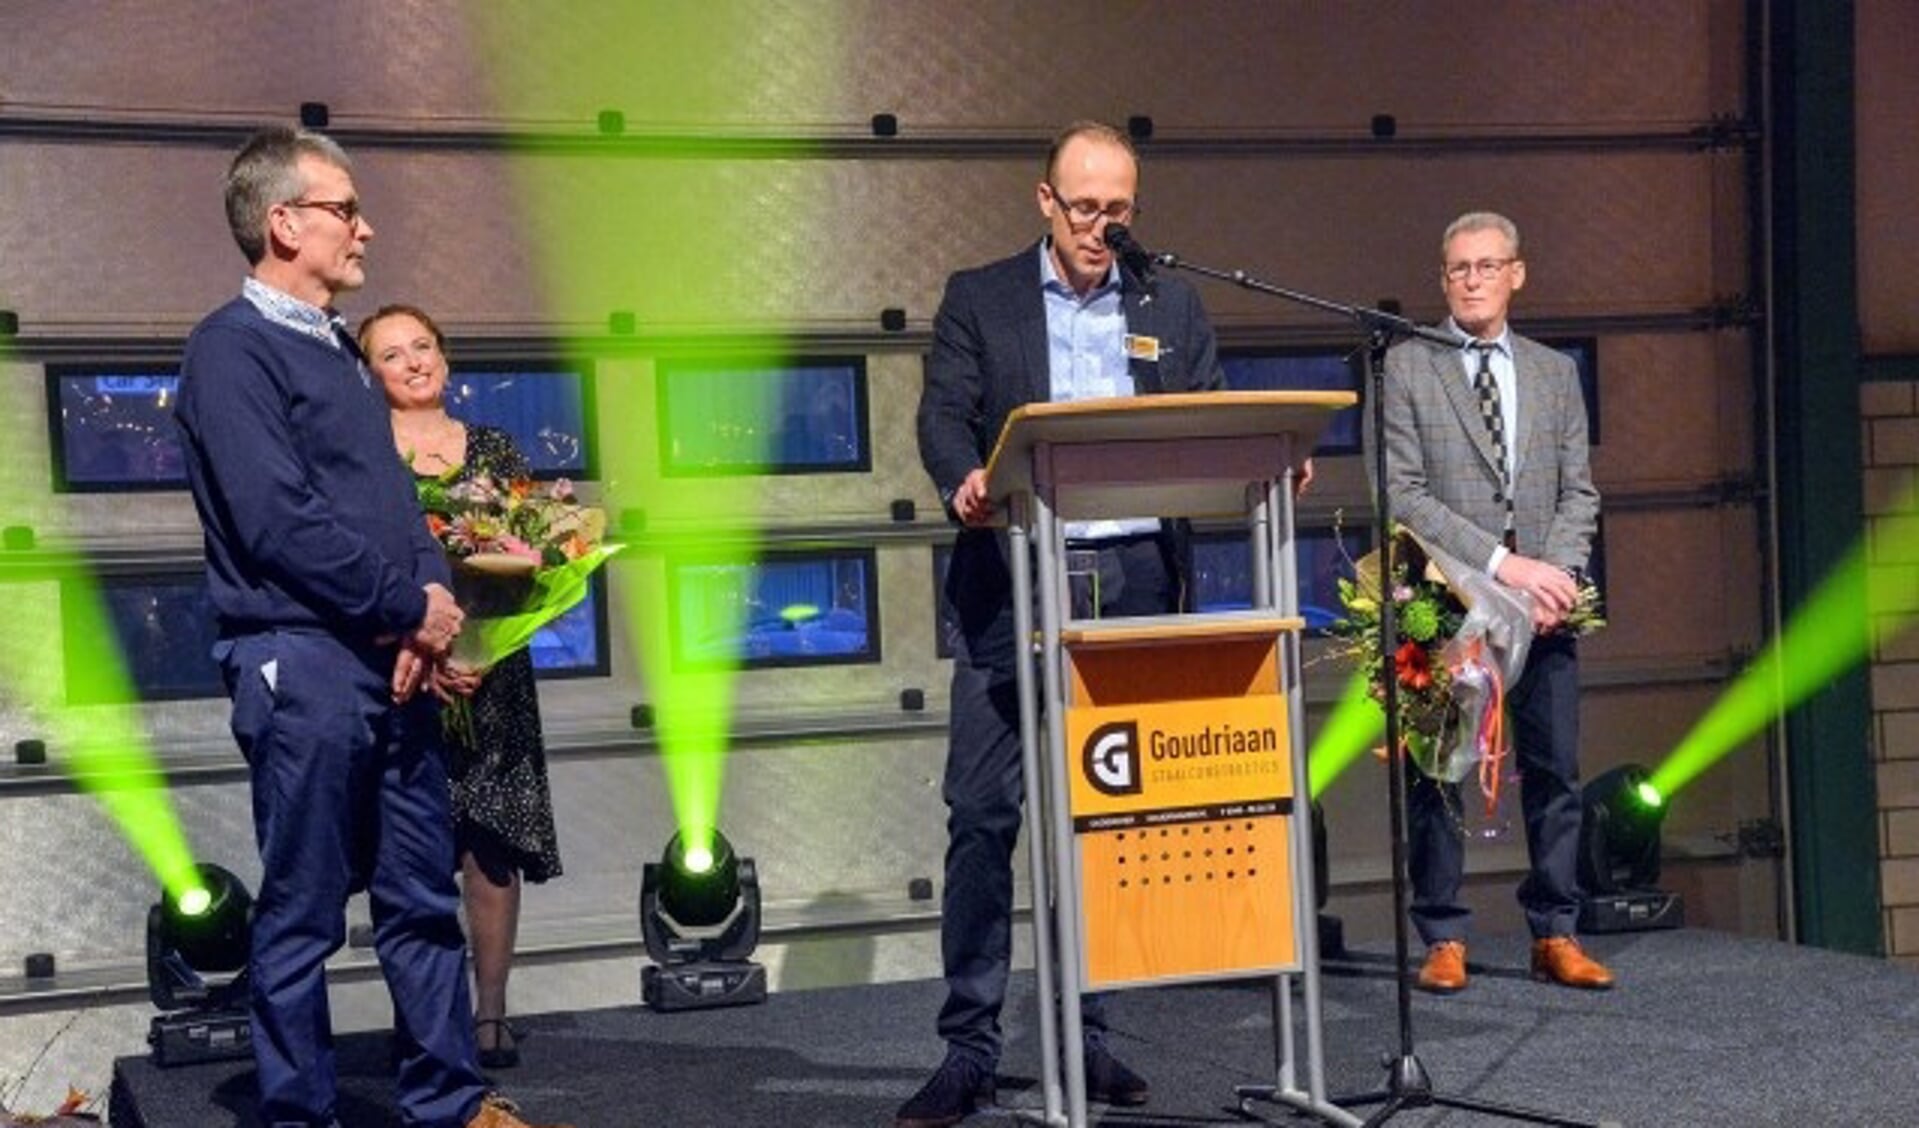 Tijdens zijn toespraak huldigde Johan Goudriaan Hans van Ingen (links) voor zijn 40-jarig dienstverband bij Goudriaan Staal. Achter hen kijken Linda en Gert Goudriaan toe. (Foto: Paul van den Dungen)